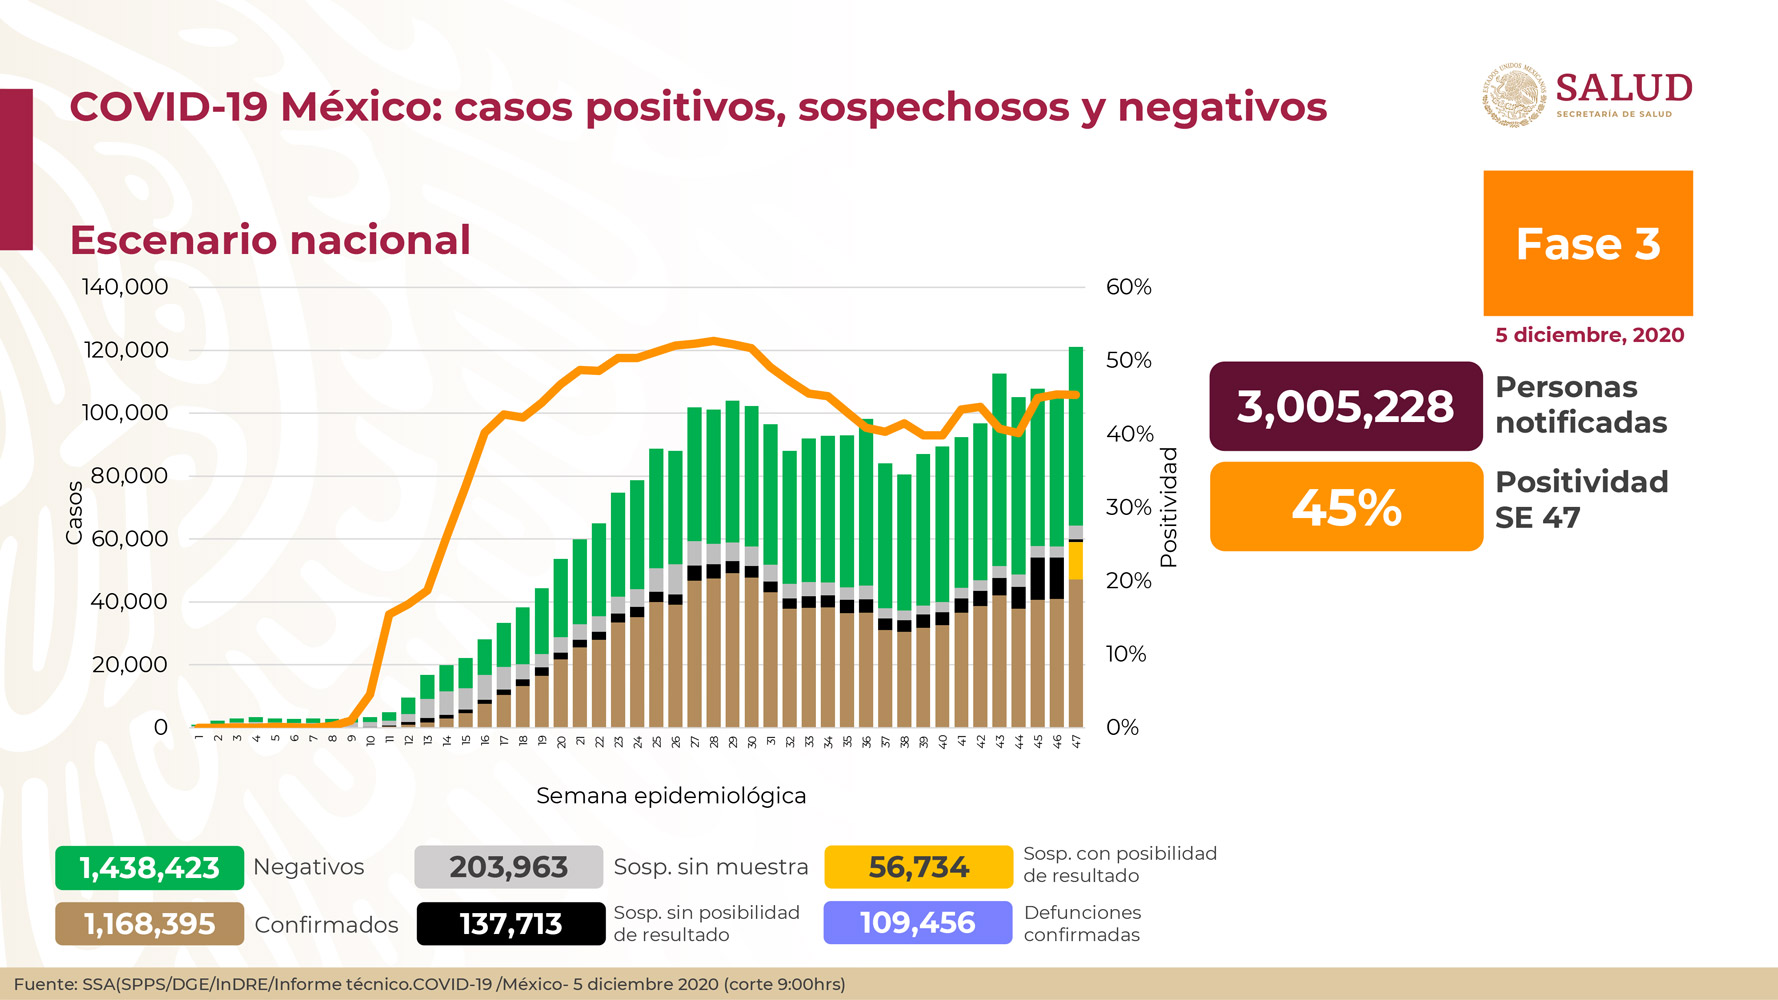 En México hay 1,168,395 casos confirmados de COVID-19